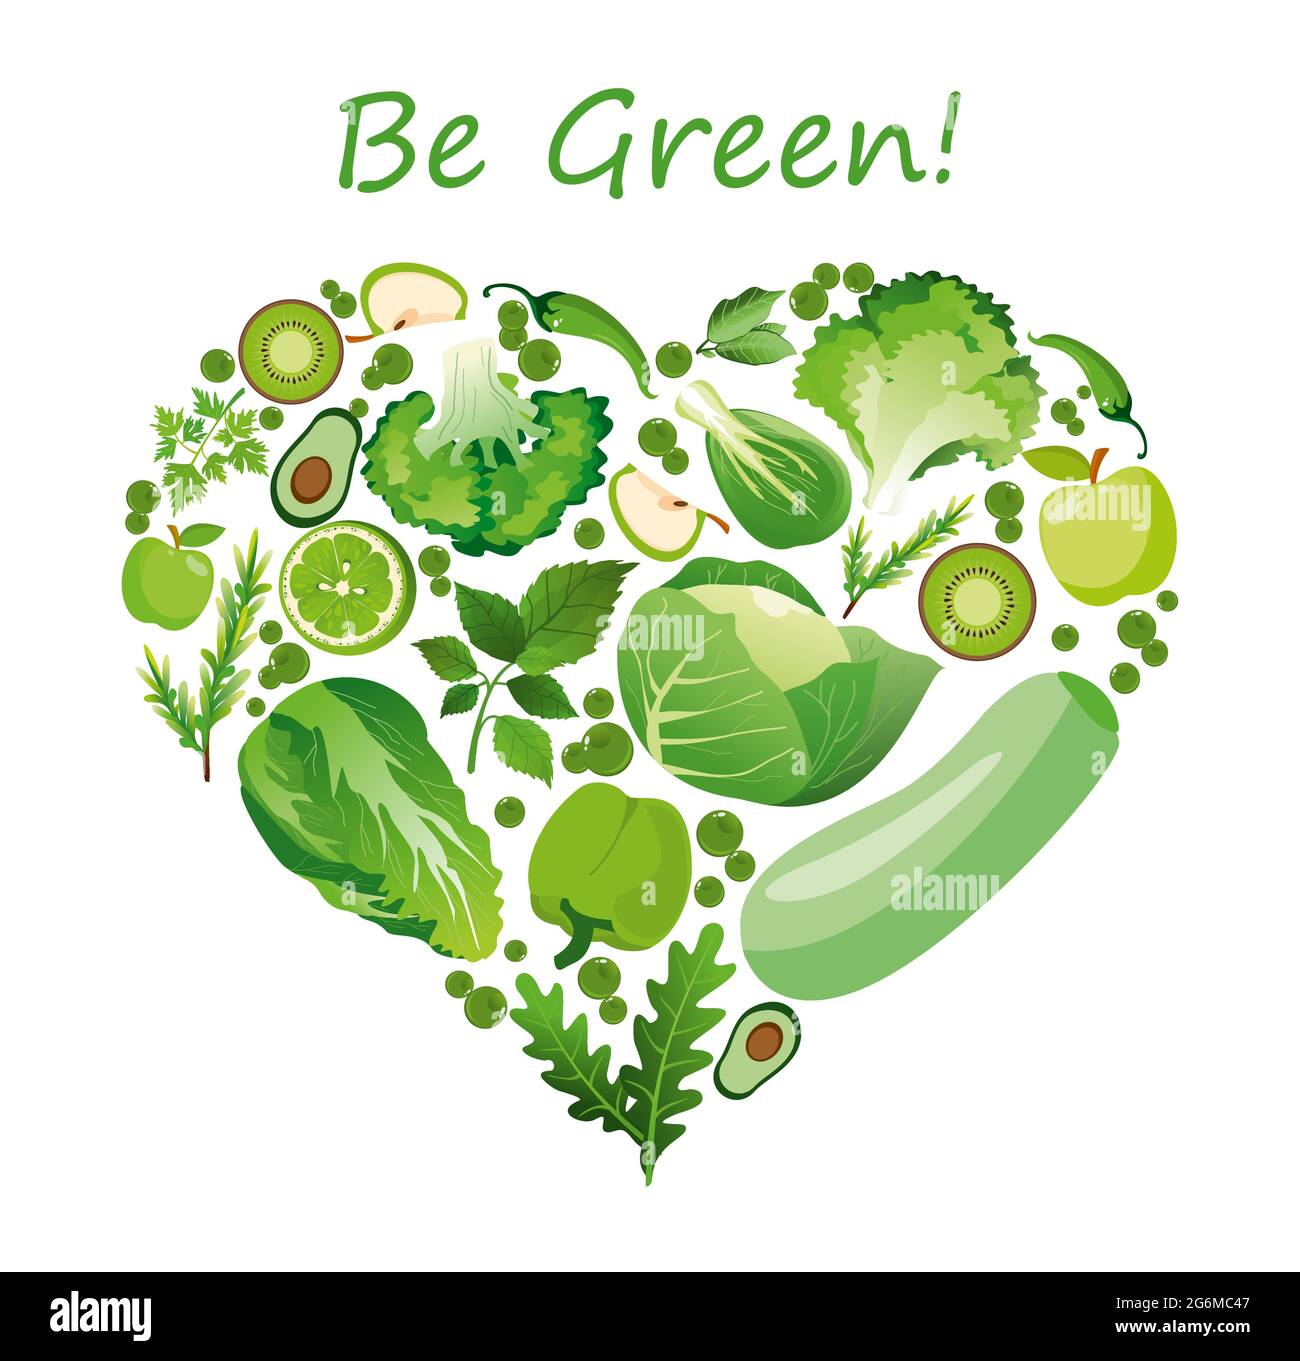 Illustration vectorielle forme de coeur des fruits et légumes verts. Concept biologique de nutrition saine dans un style plat. Illustration de Vecteur